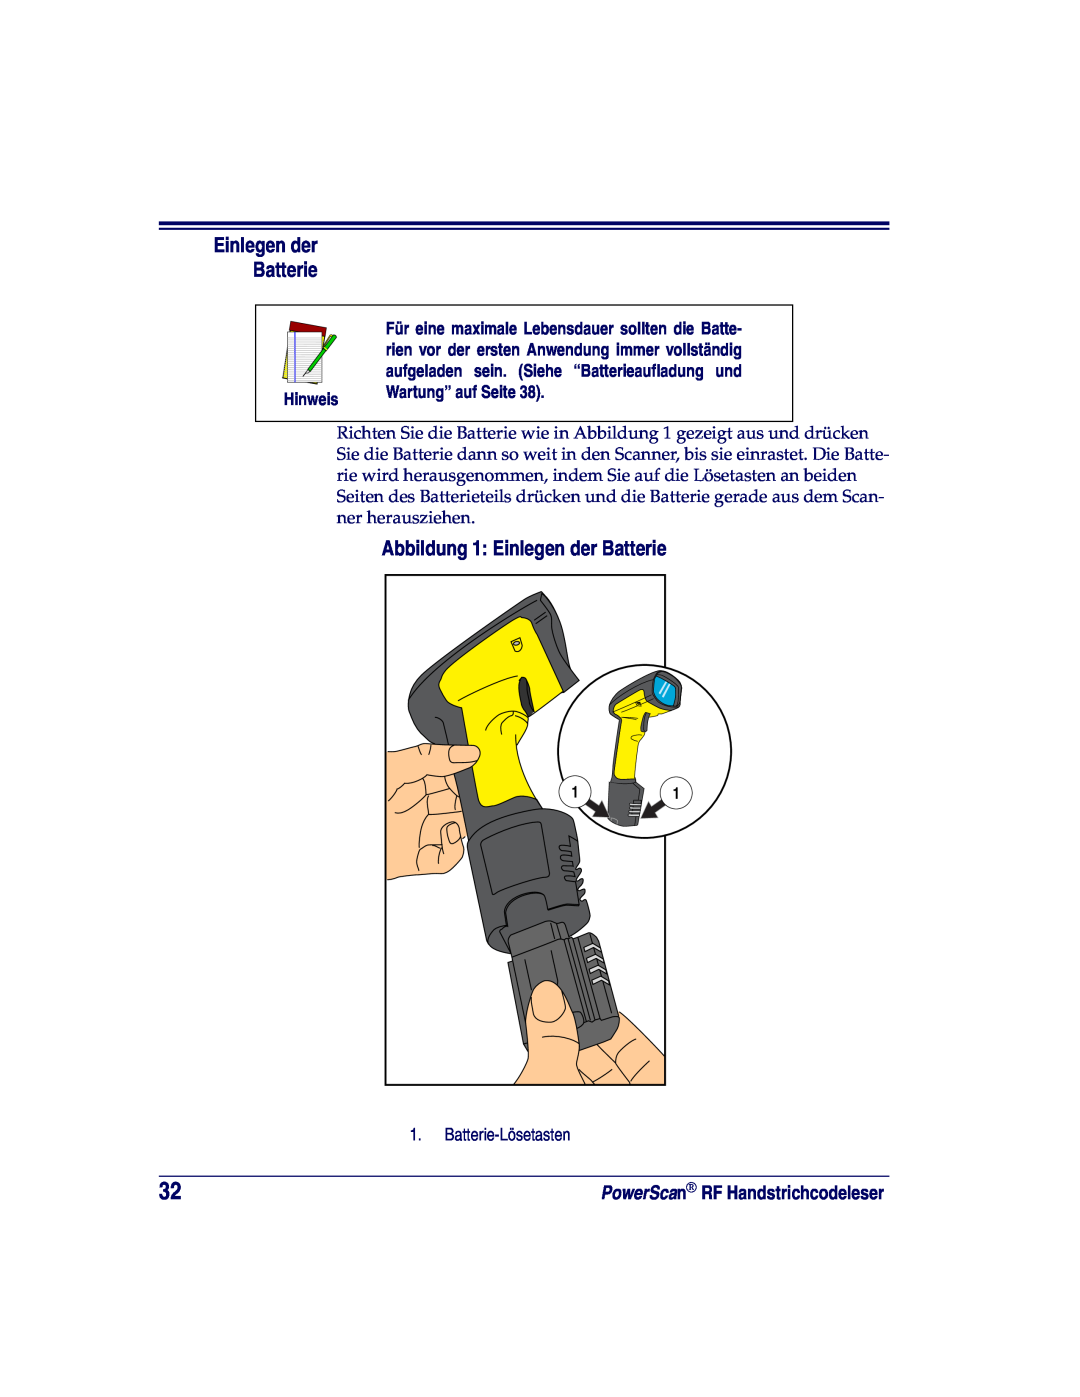 Datalogic Scanning SR, XLR, HD manual Abbildung 1 Einlegen der Batterie, Hinweis, Wartung” auf Seite 